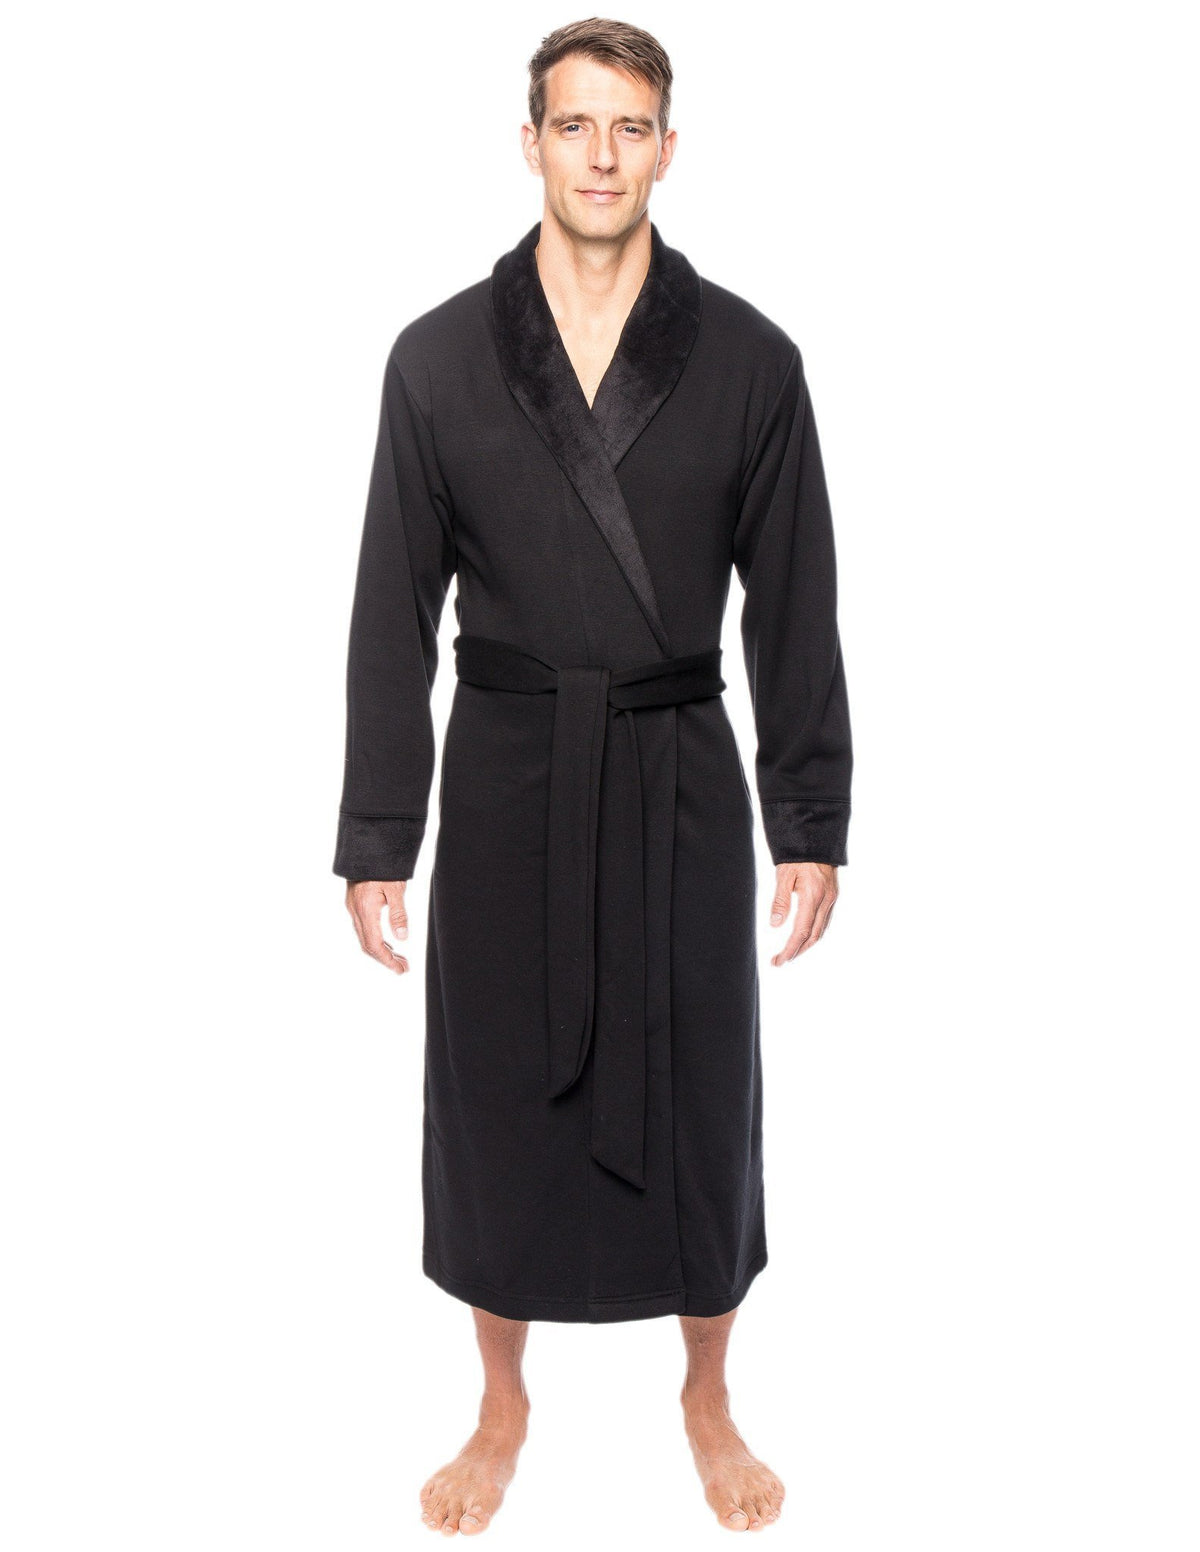 Men's Super Soft Brushed Robe - Black